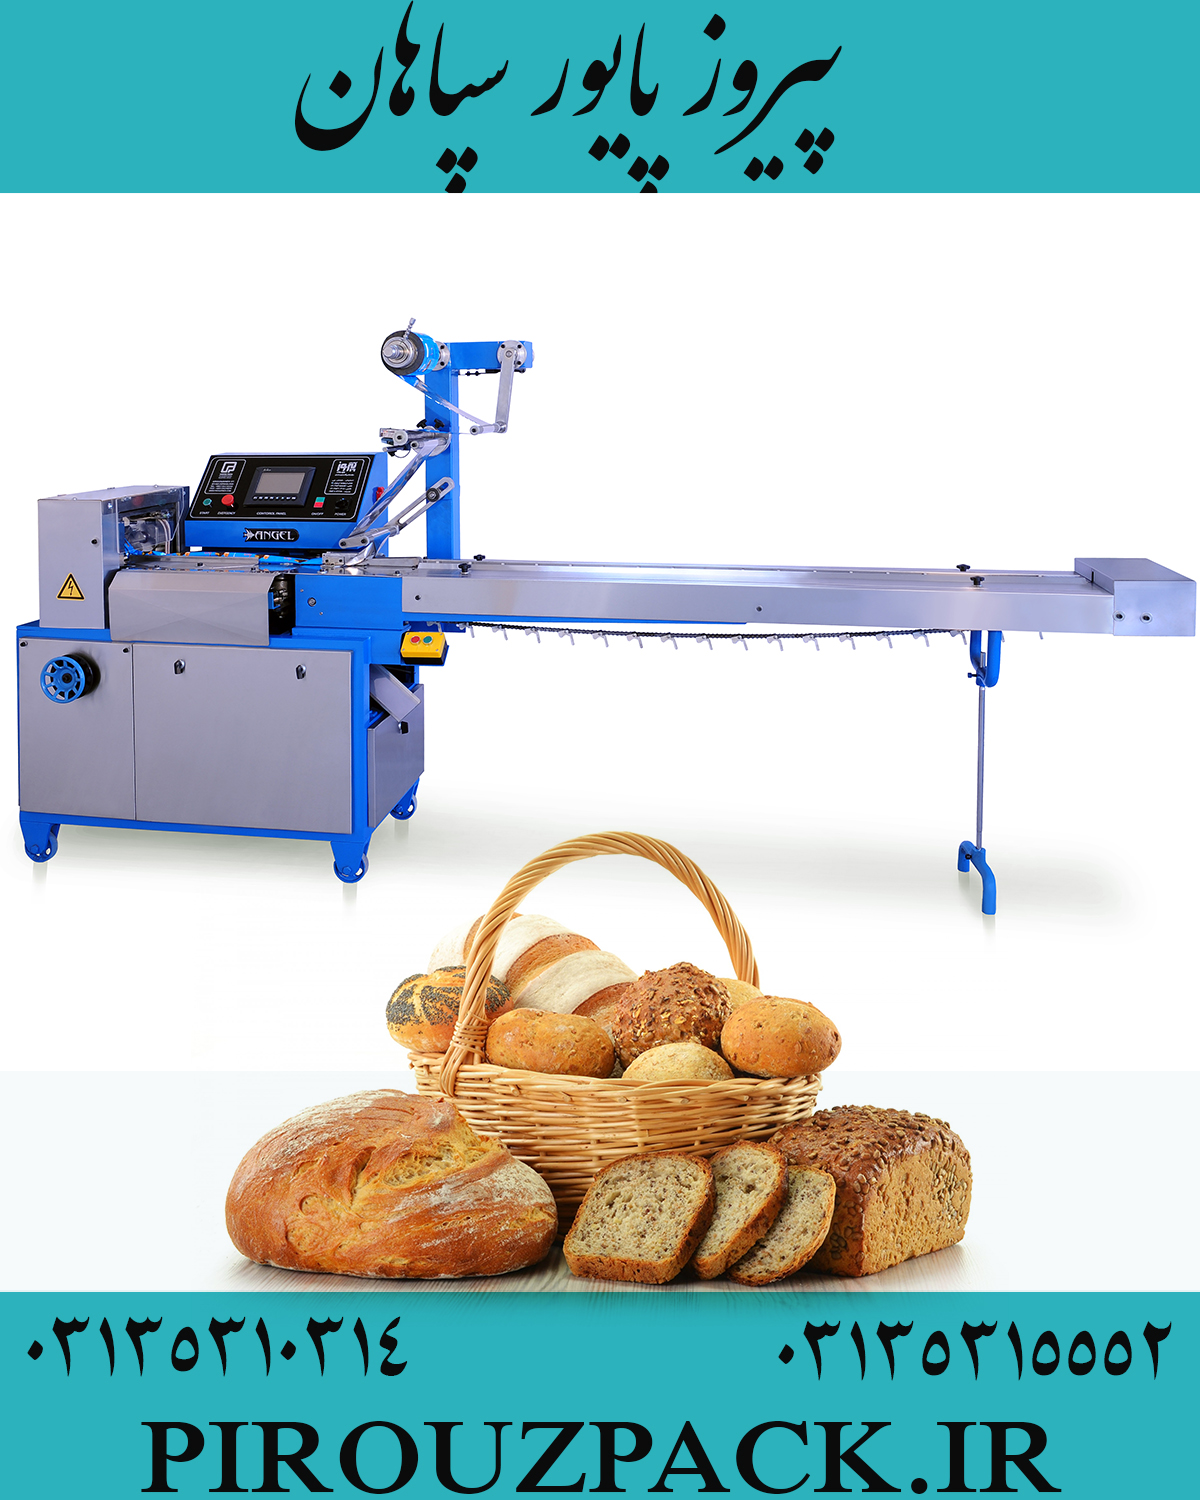 دستگاه بسته بندی نان باگت در پیروزپک و ارسال به سراسر کشور